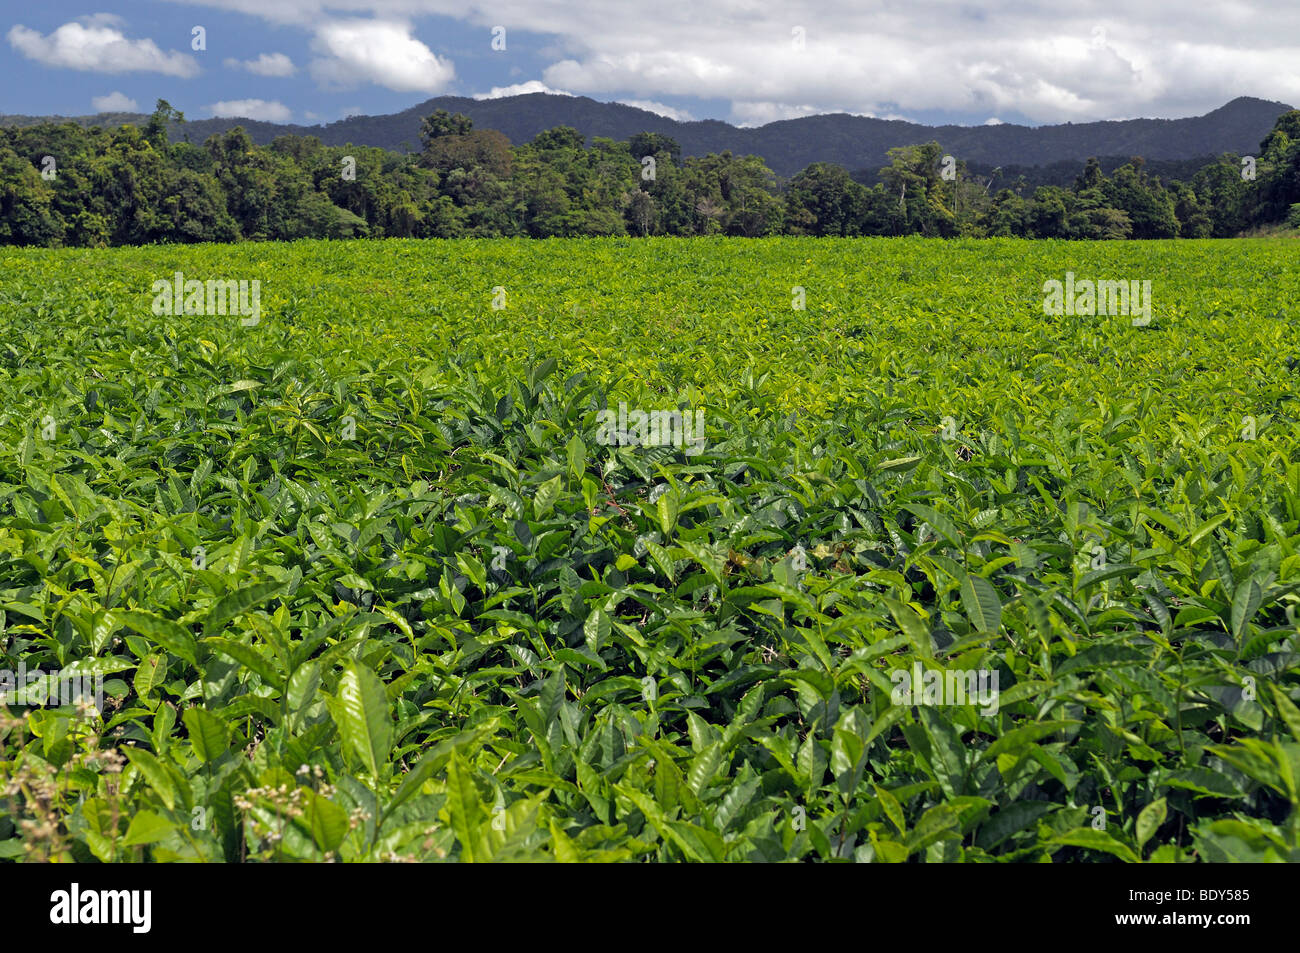 La plantation de thé dans les montagnes de la parc national de Daintree, Queensland, Australie Banque D'Images